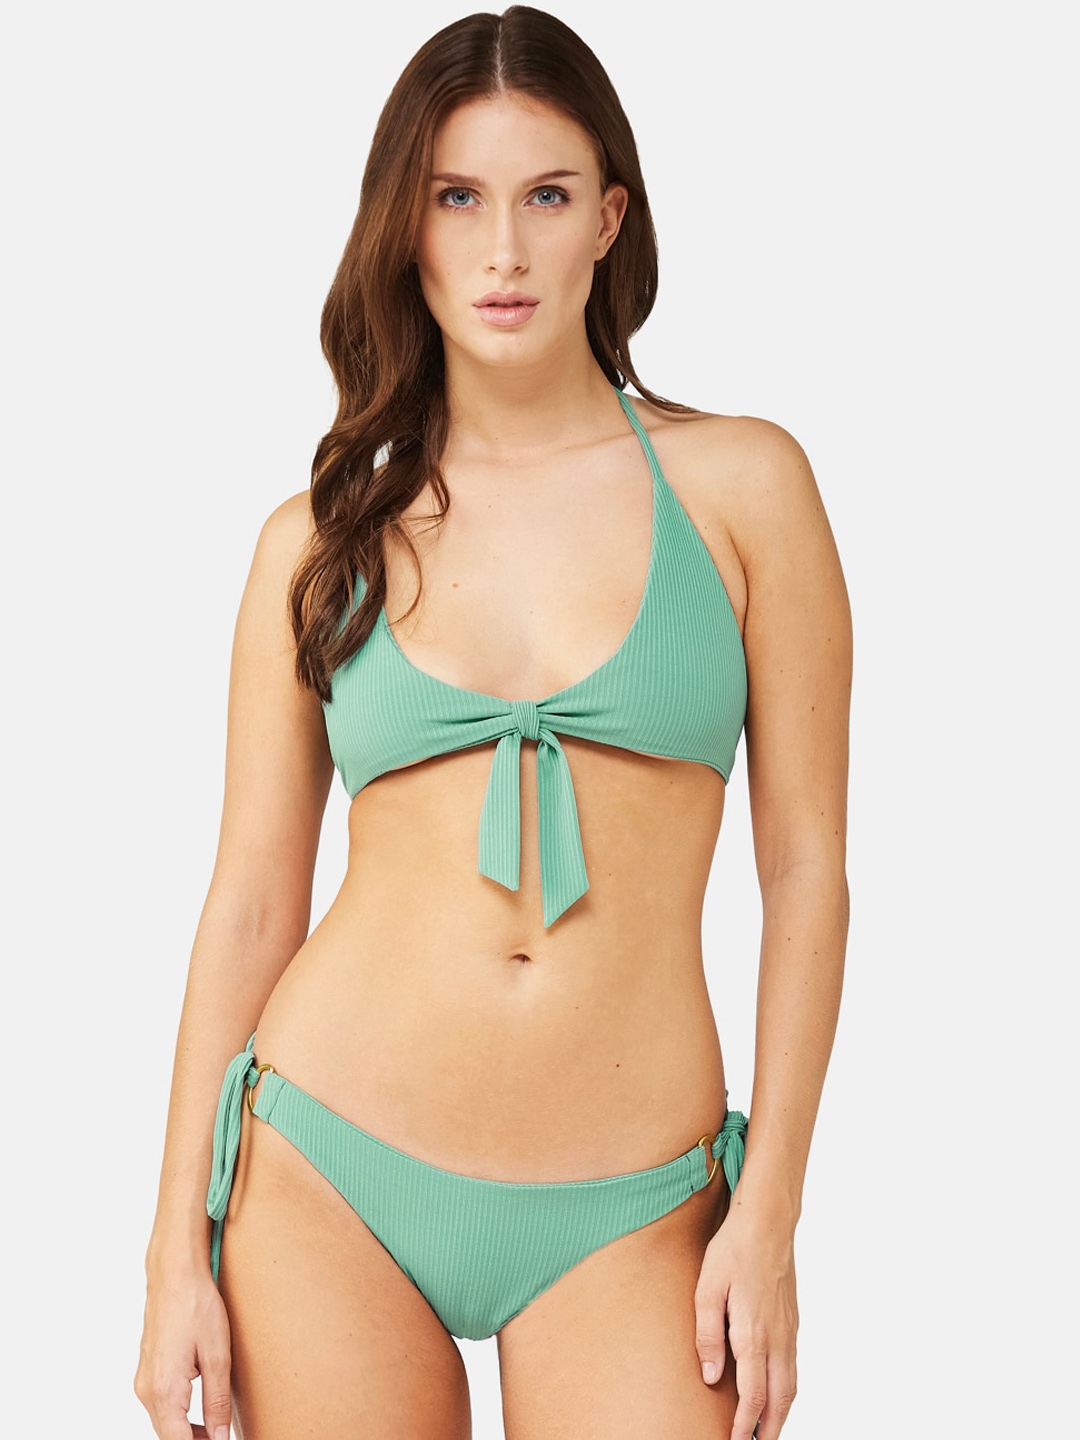 Nike Swimming animal tape bikini top in green